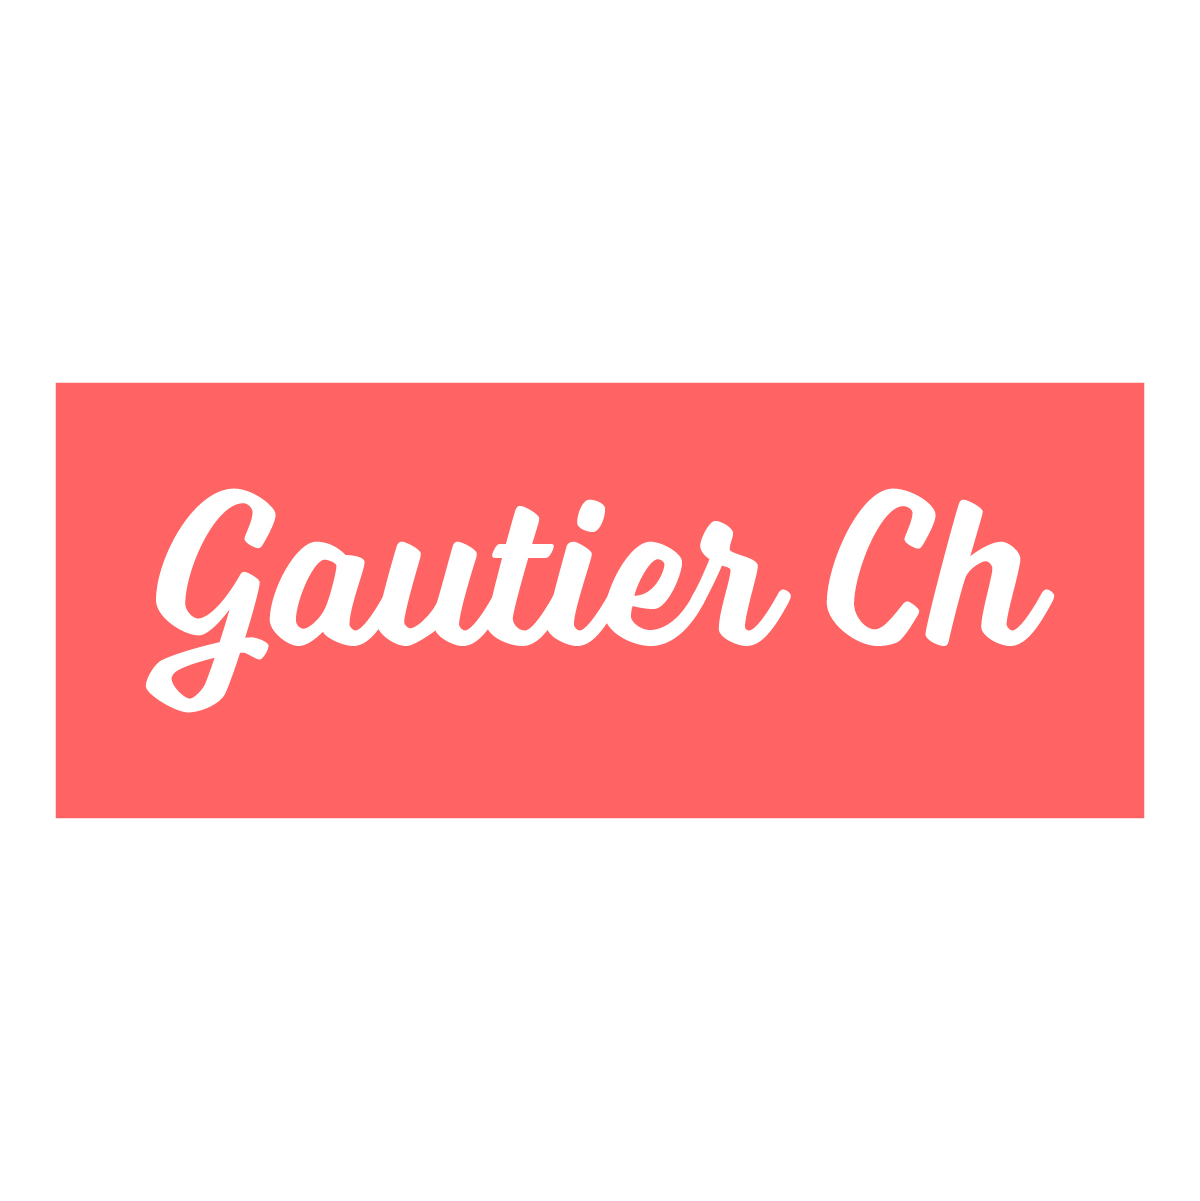 (c) Gauthier-ch.com